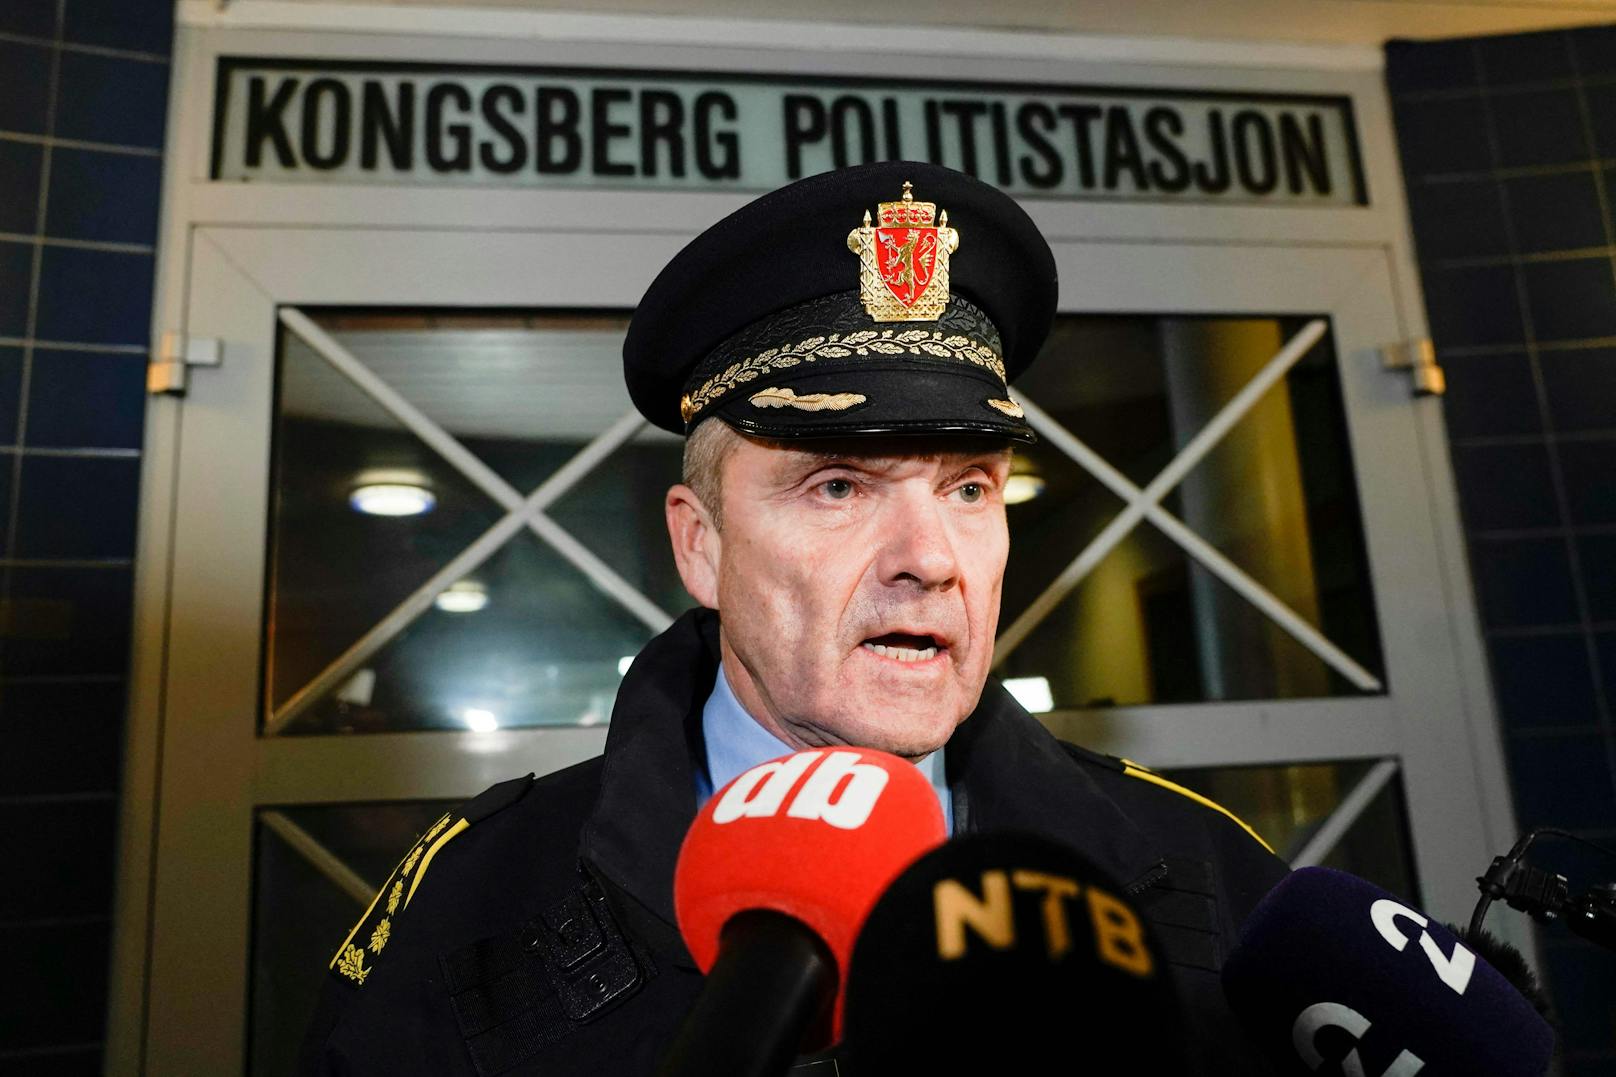 Laut Polizeichef Øyvind Aas ist das Motiv des Täters unklar, ein Terroranschlag kann jedoch nicht ausgeschlossen werden.